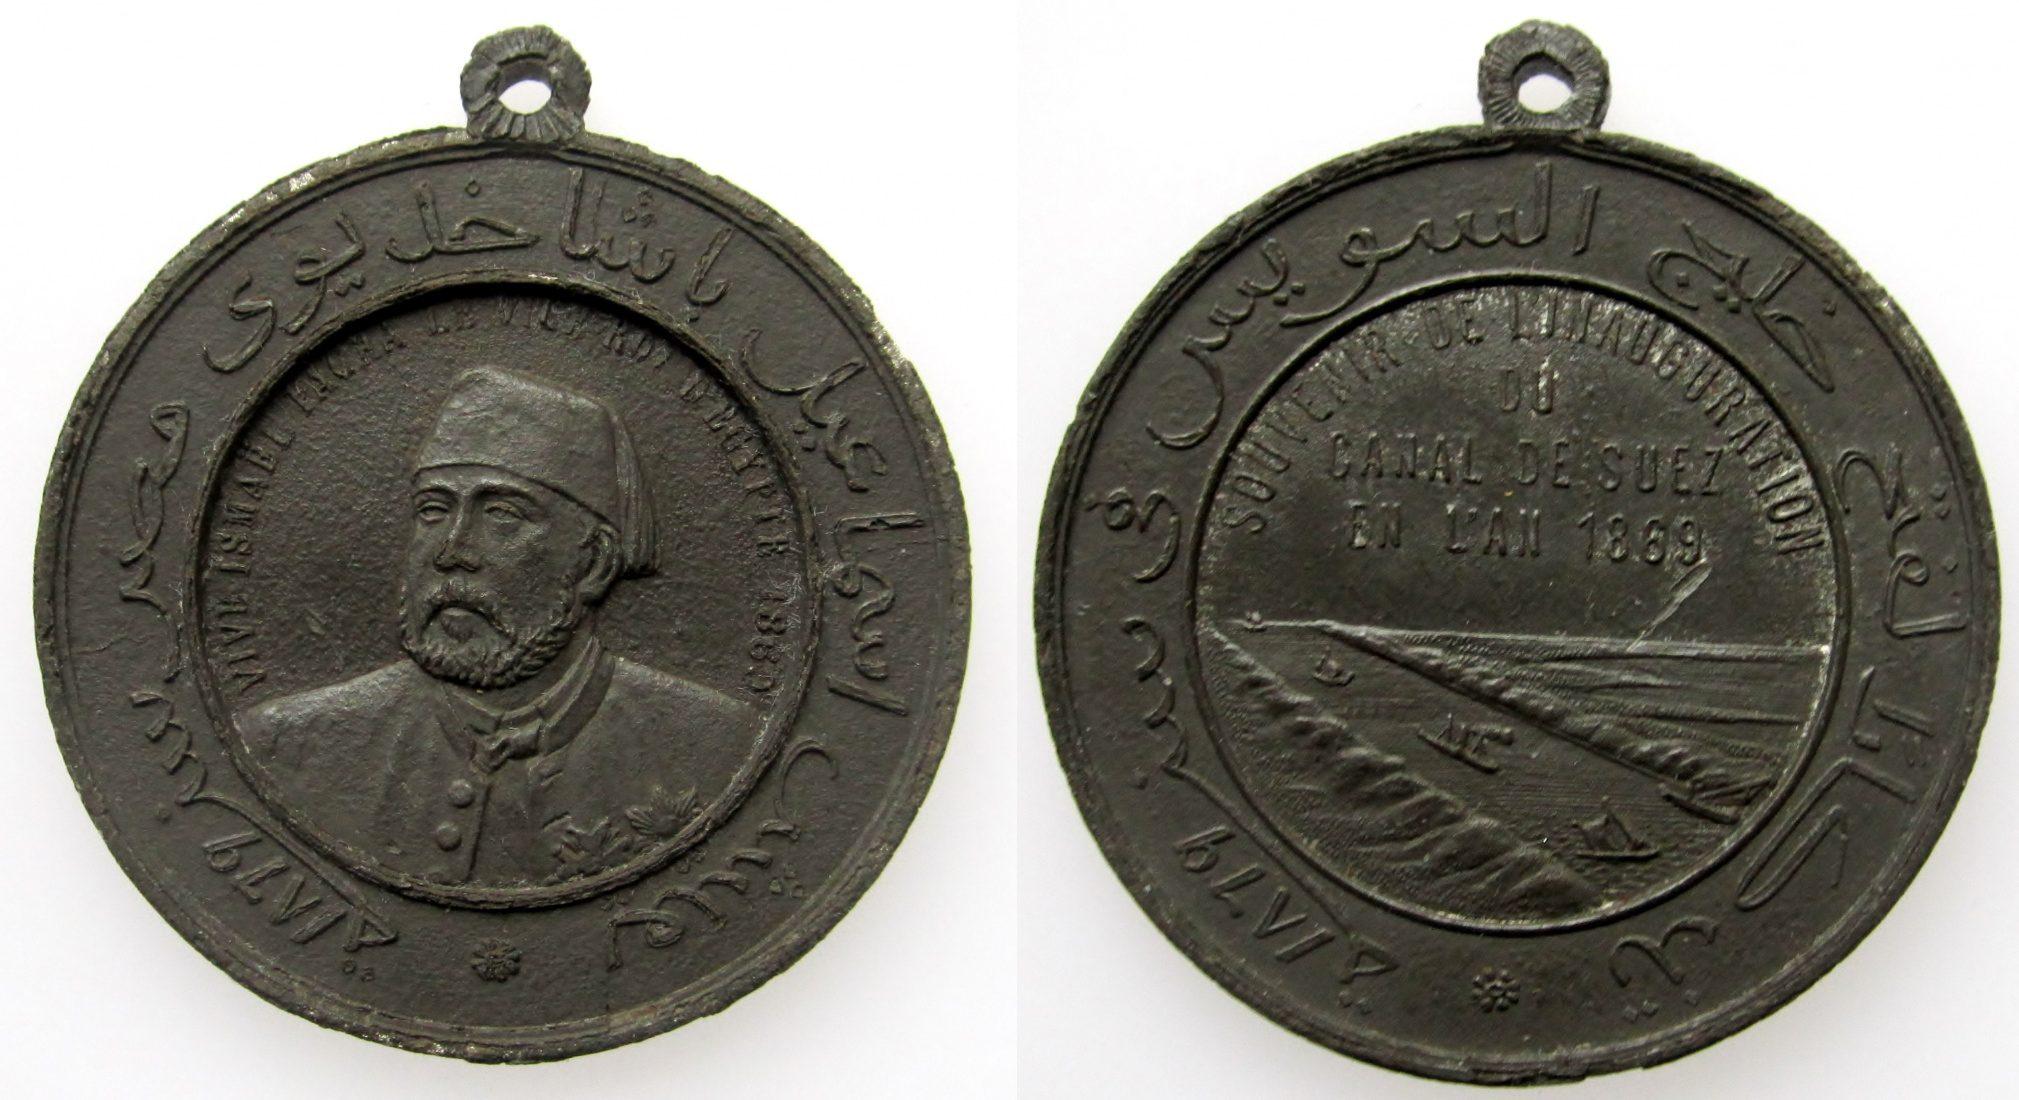 Foto Ägypten Medal 1869